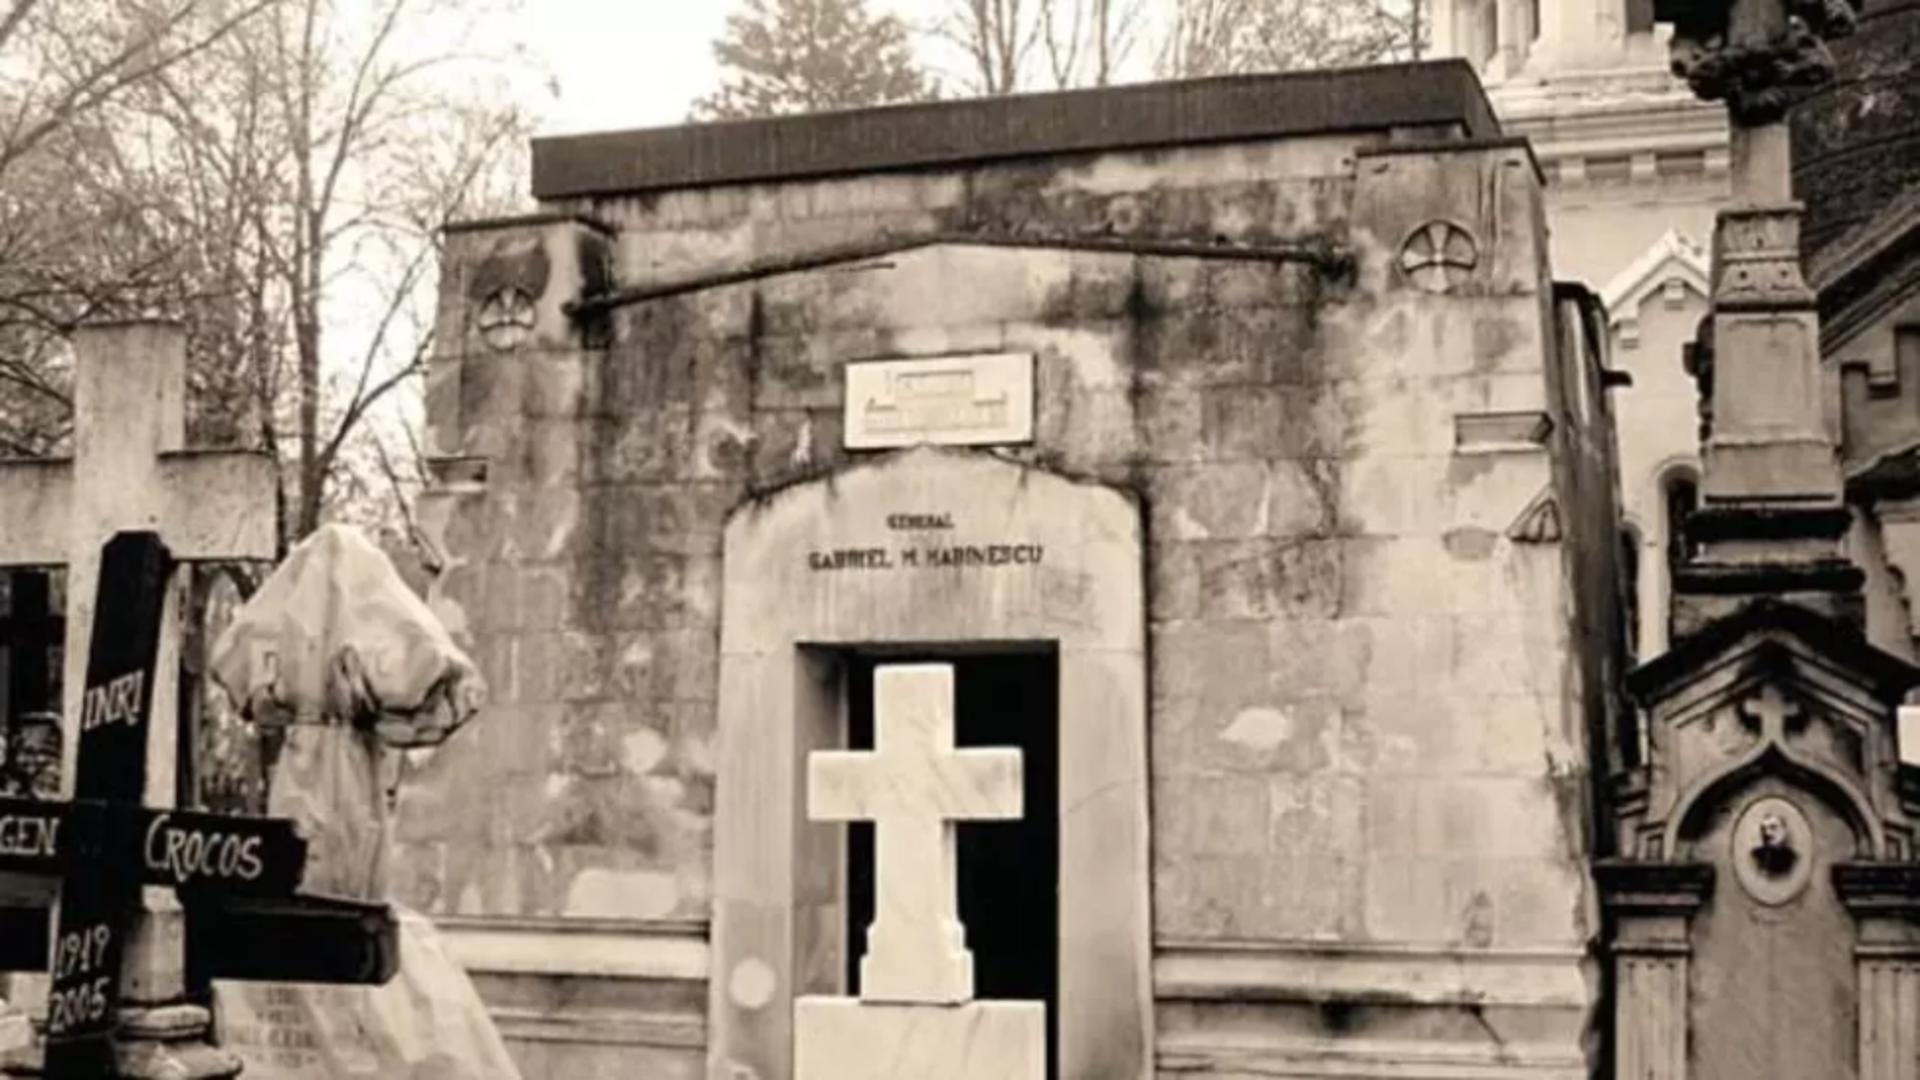 Misterul din Cimitirul BELLU. Ce a fost ascuns zeci de ani în cavoul celui mai controversat șef ai Poliției Române?